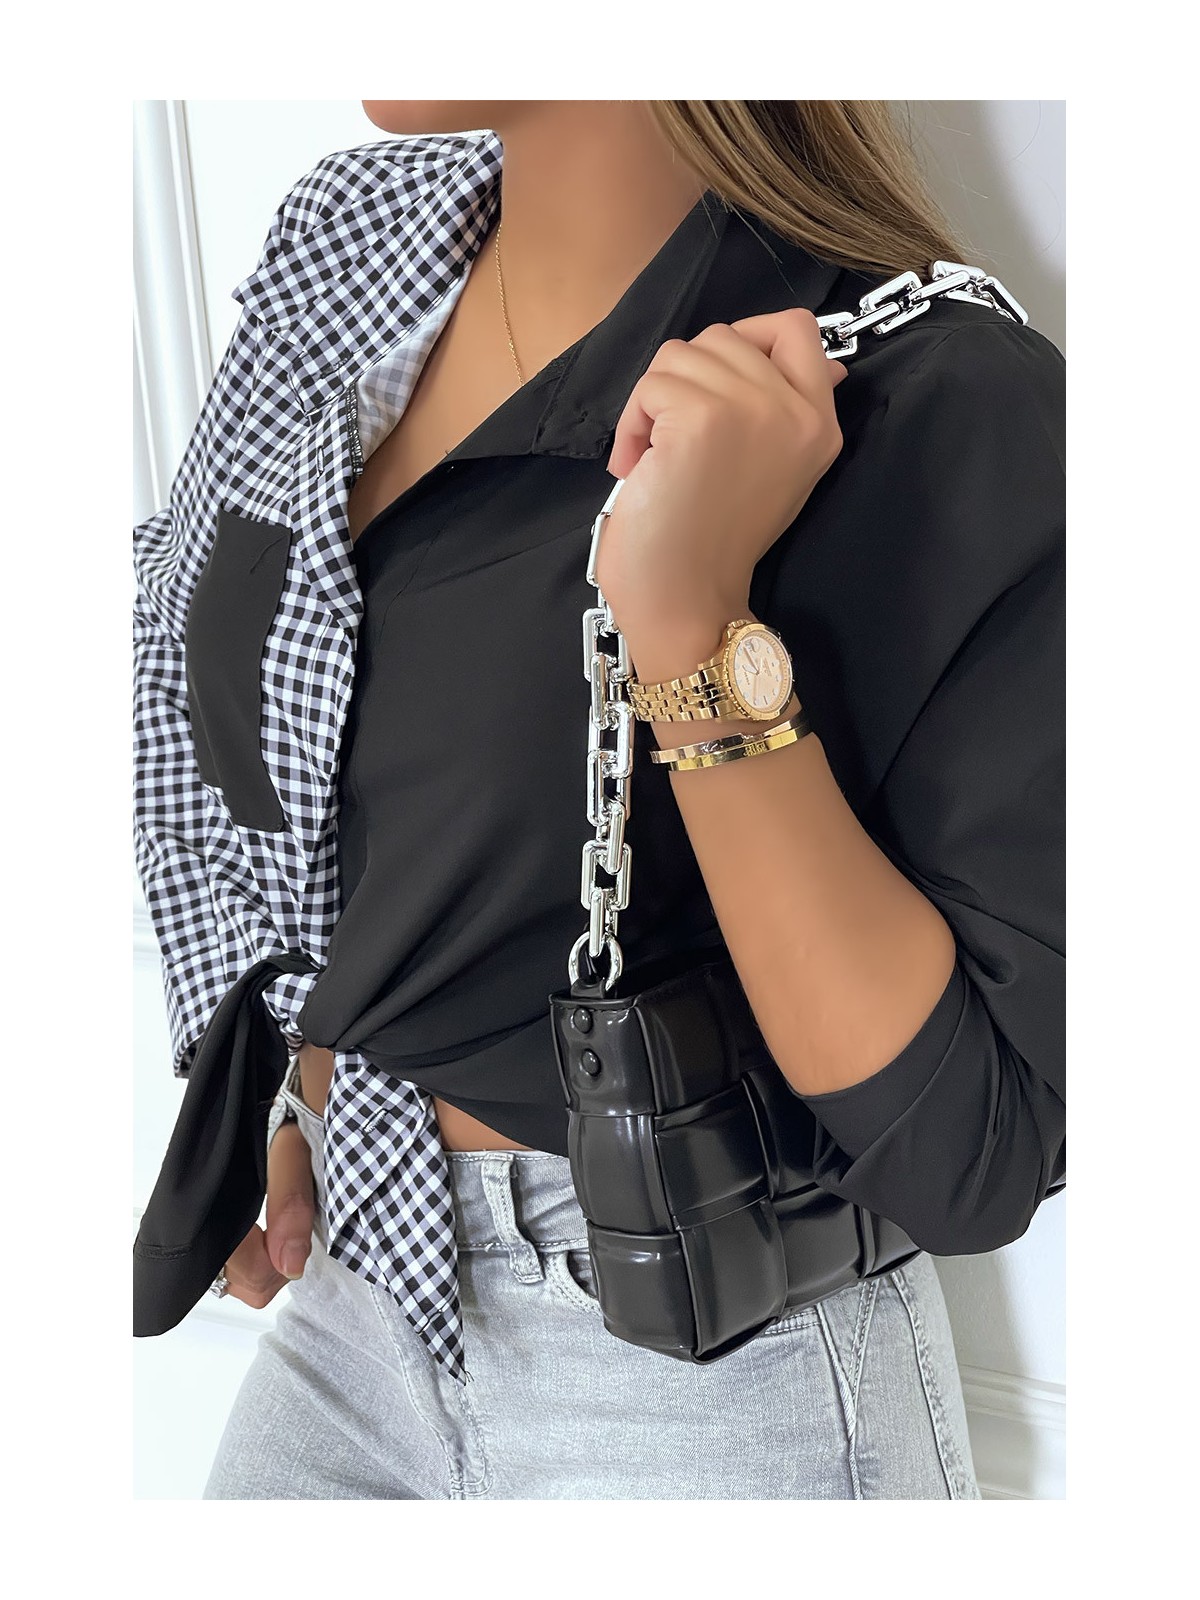 Chemise noir bicolor à carreaux blanc et noir - 8